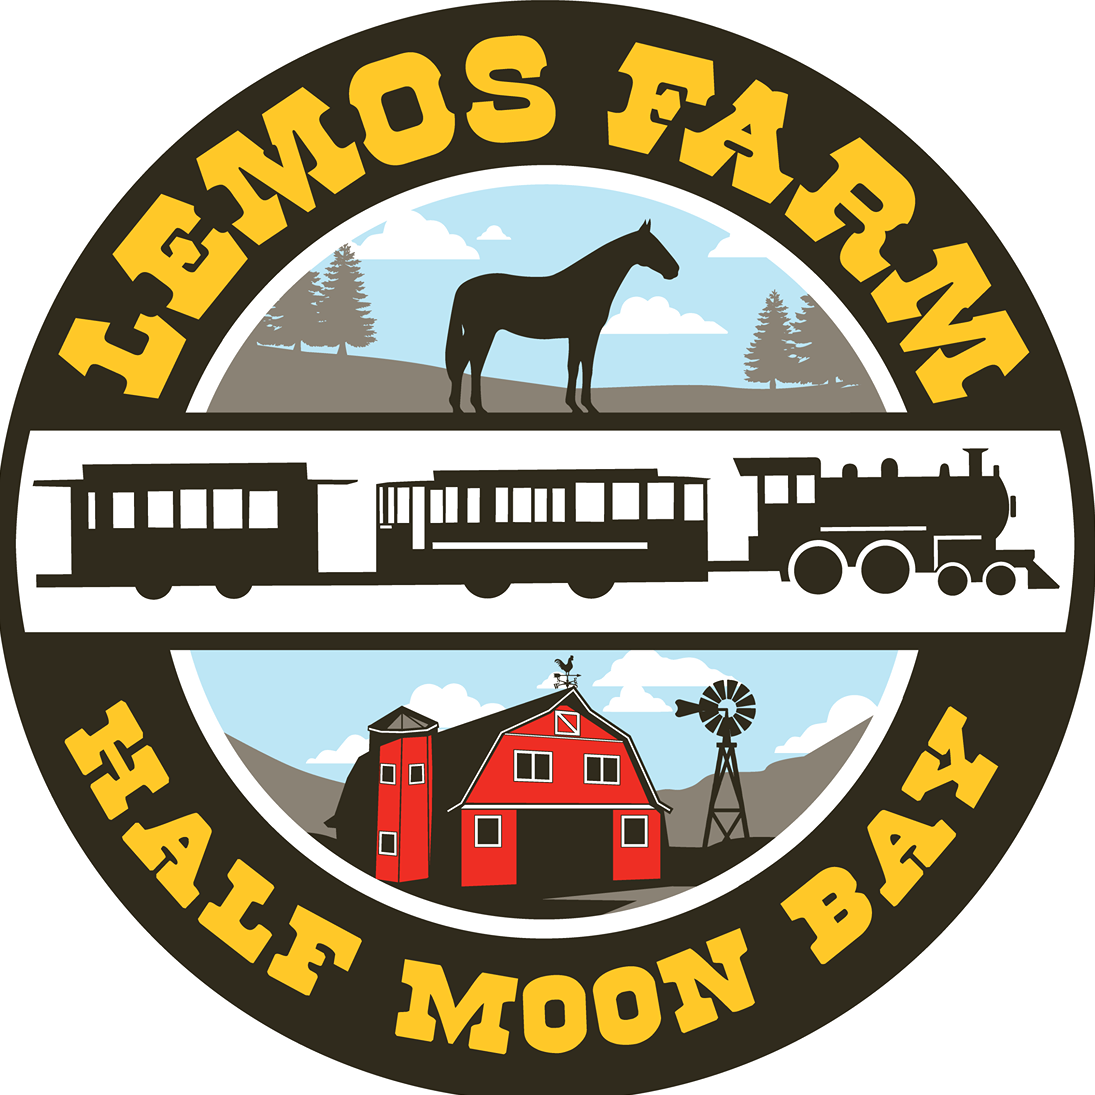 Business logo of Lemos Farm